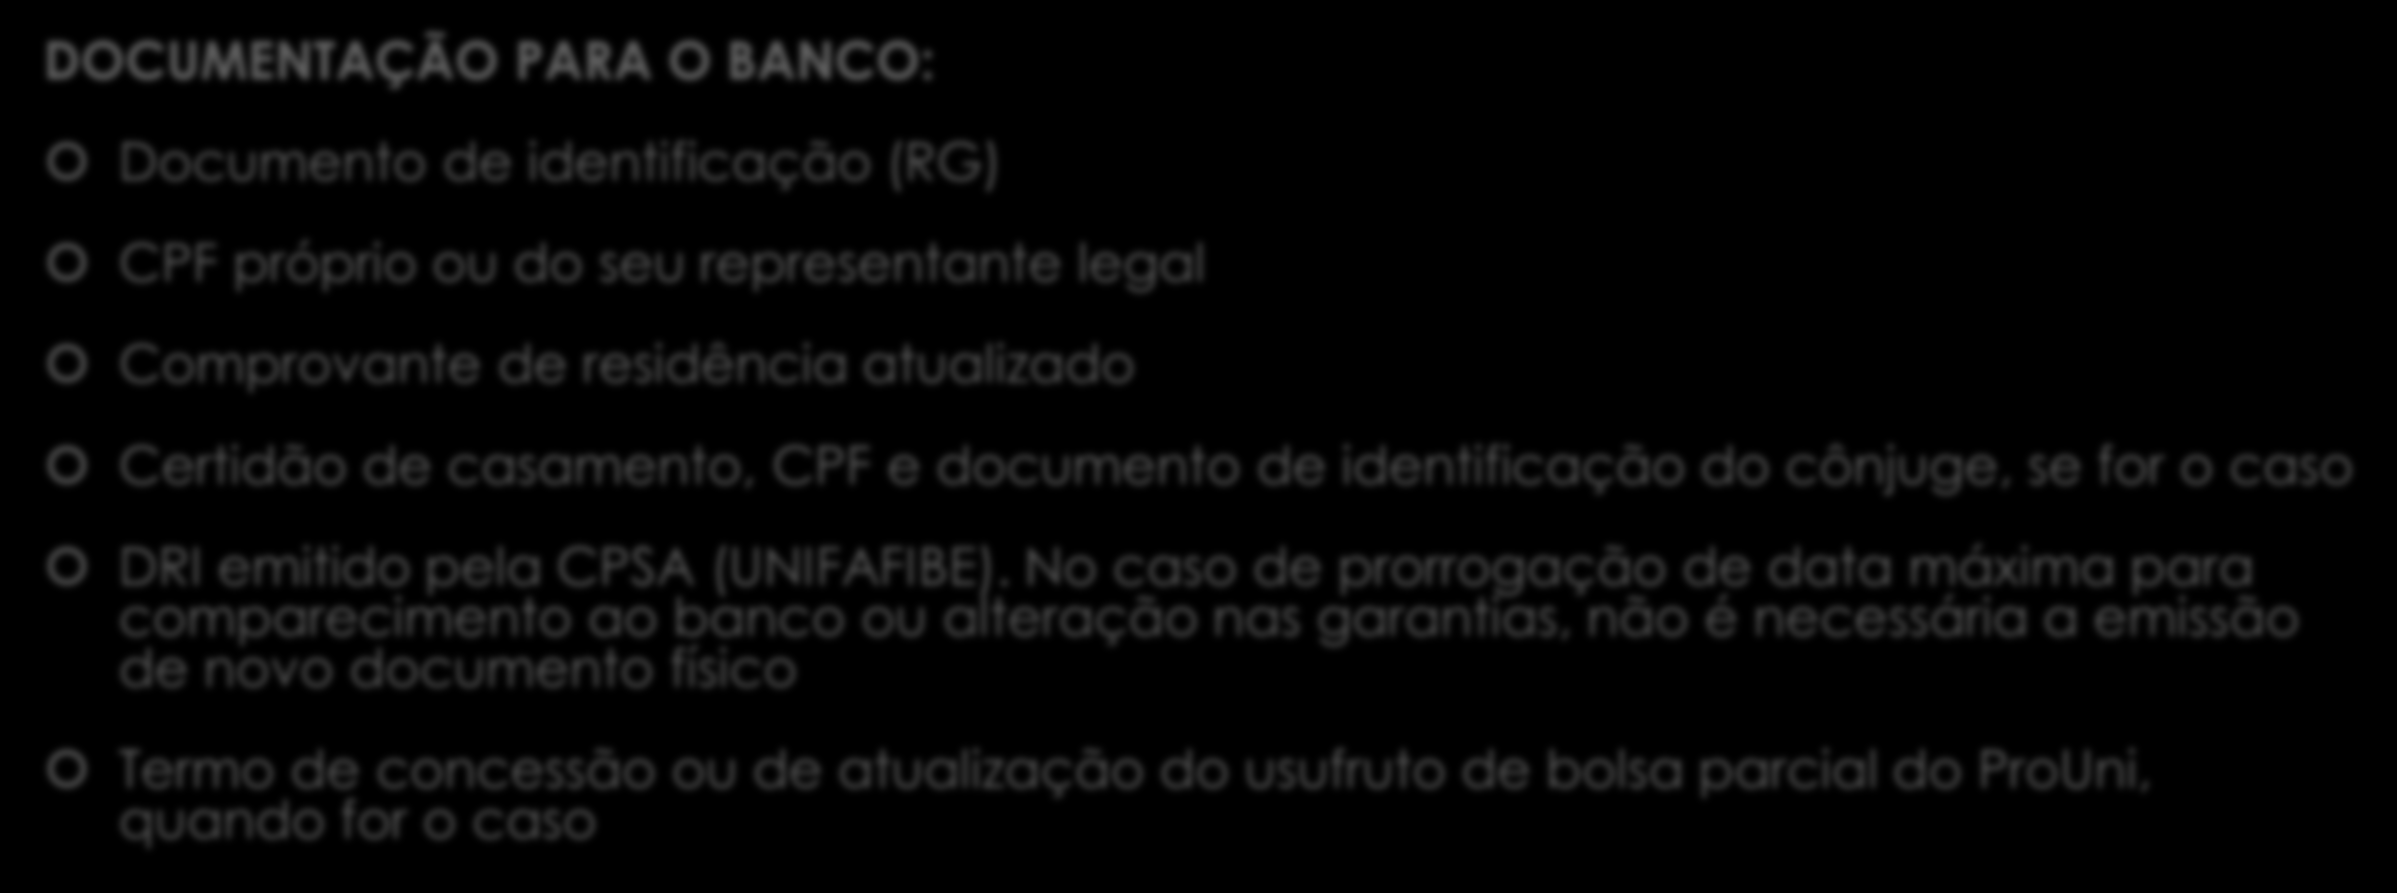 Documentação necessária DOCUMENTAÇÃO PARA O BANCO: Documento de identificação (RG) CPF próprio ou do seu representante legal Comprovante de residência atualizado Certidão de casamento, CPF e